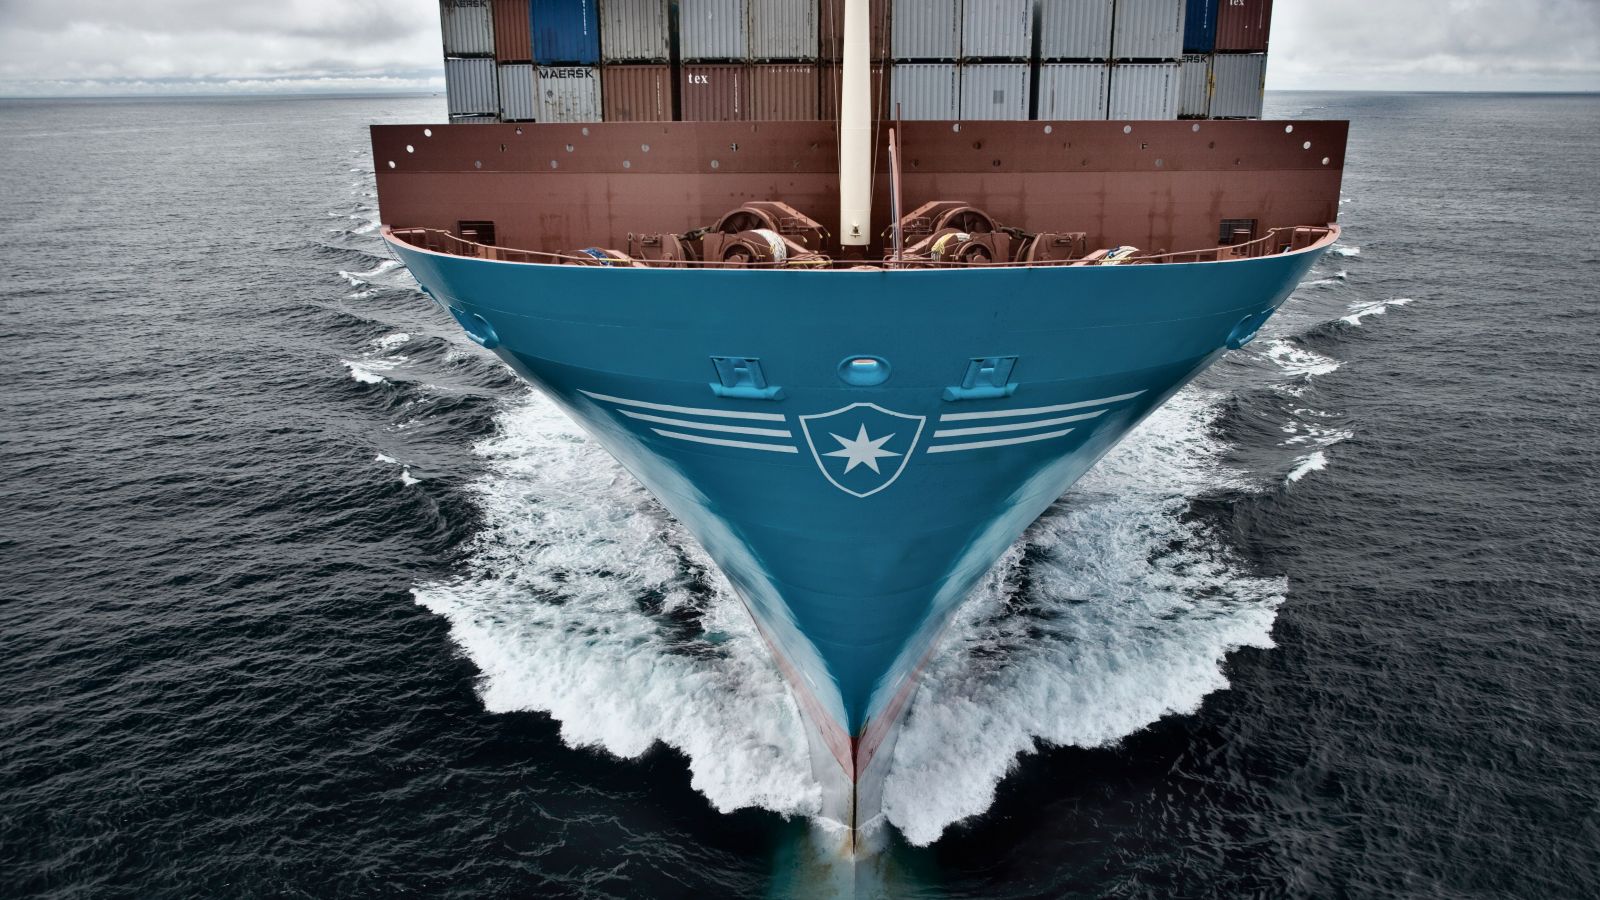 Big, Bigger, Biggest, Maersk